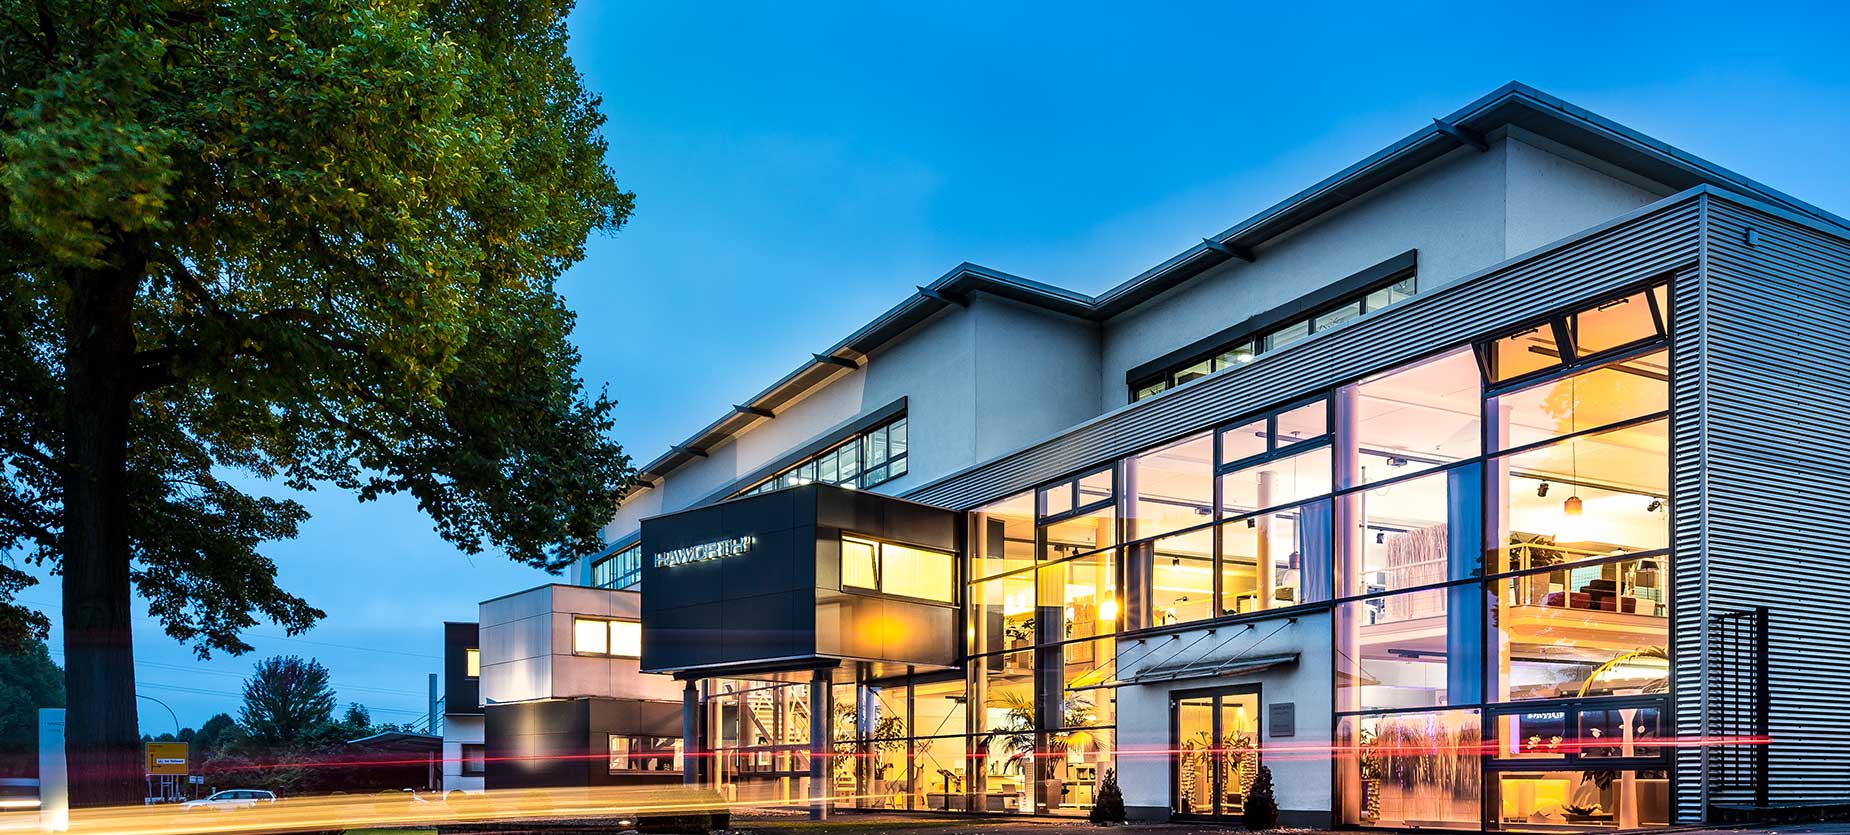 El showroom de Bad Münder (cerca de Hannover) está formado por dos plantas de estimulantes entornos de trabajo centrados en las nuevas maneras de trabajar y la importancia de la cultura de una empresa.